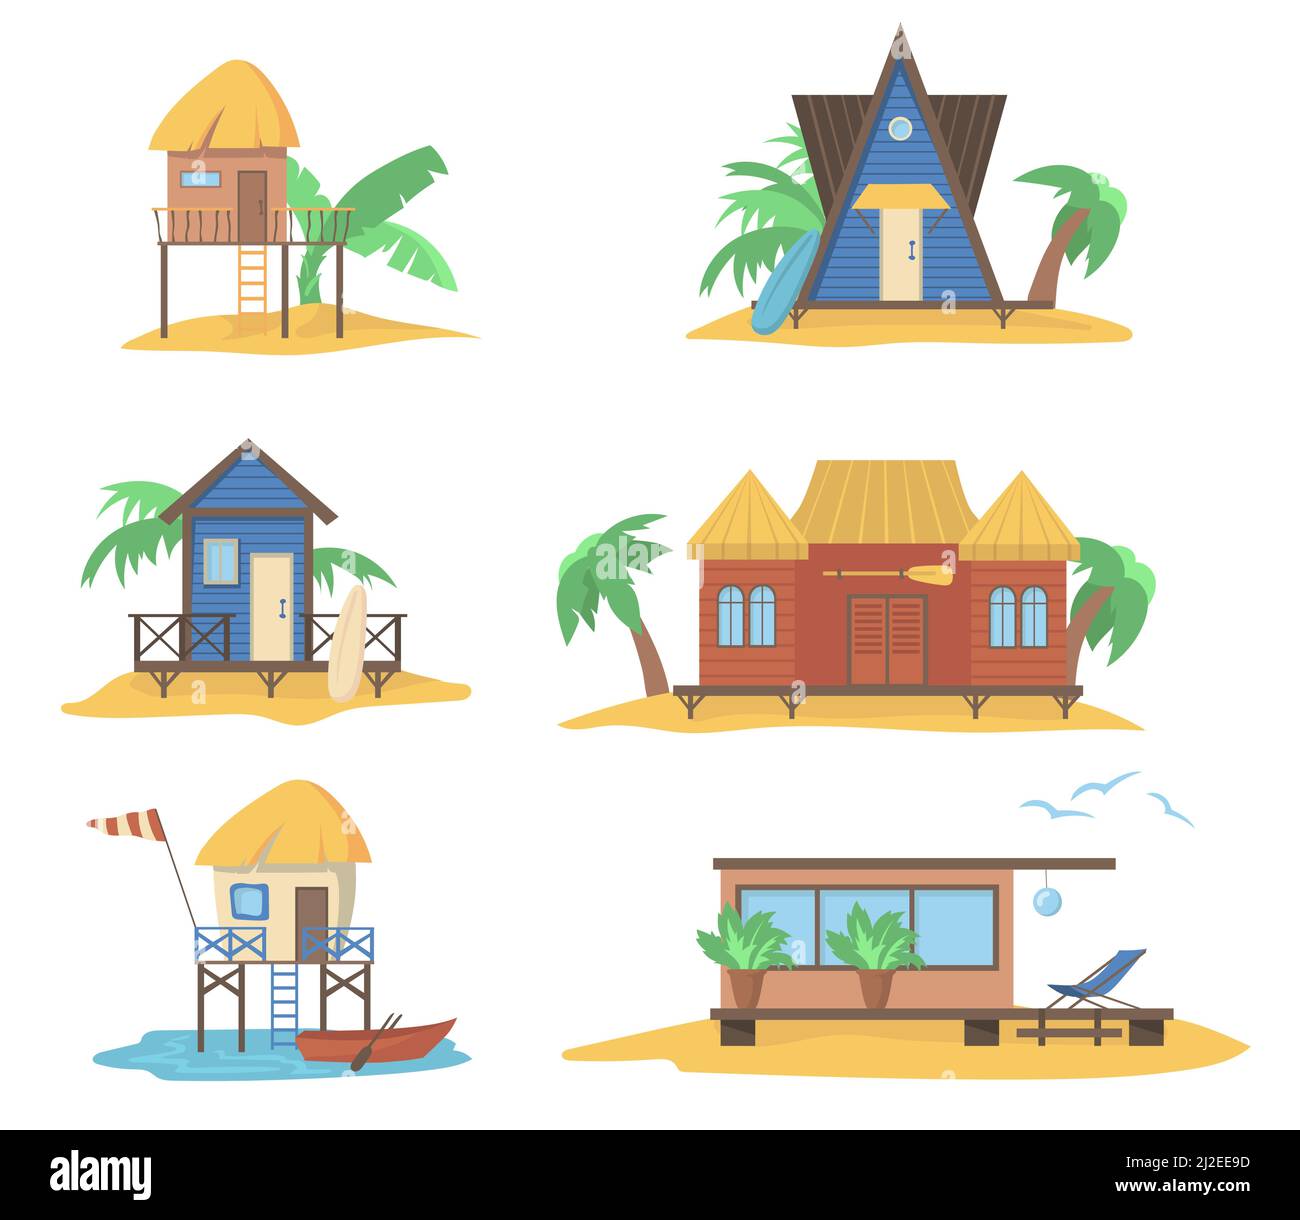 Case estive al mare set. Bungalow in legno su pali, capanne da spiaggia con cime di paglia con palme e tavole da surf. Illustrazioni vettoriali per vacanze estive, c Illustrazione Vettoriale